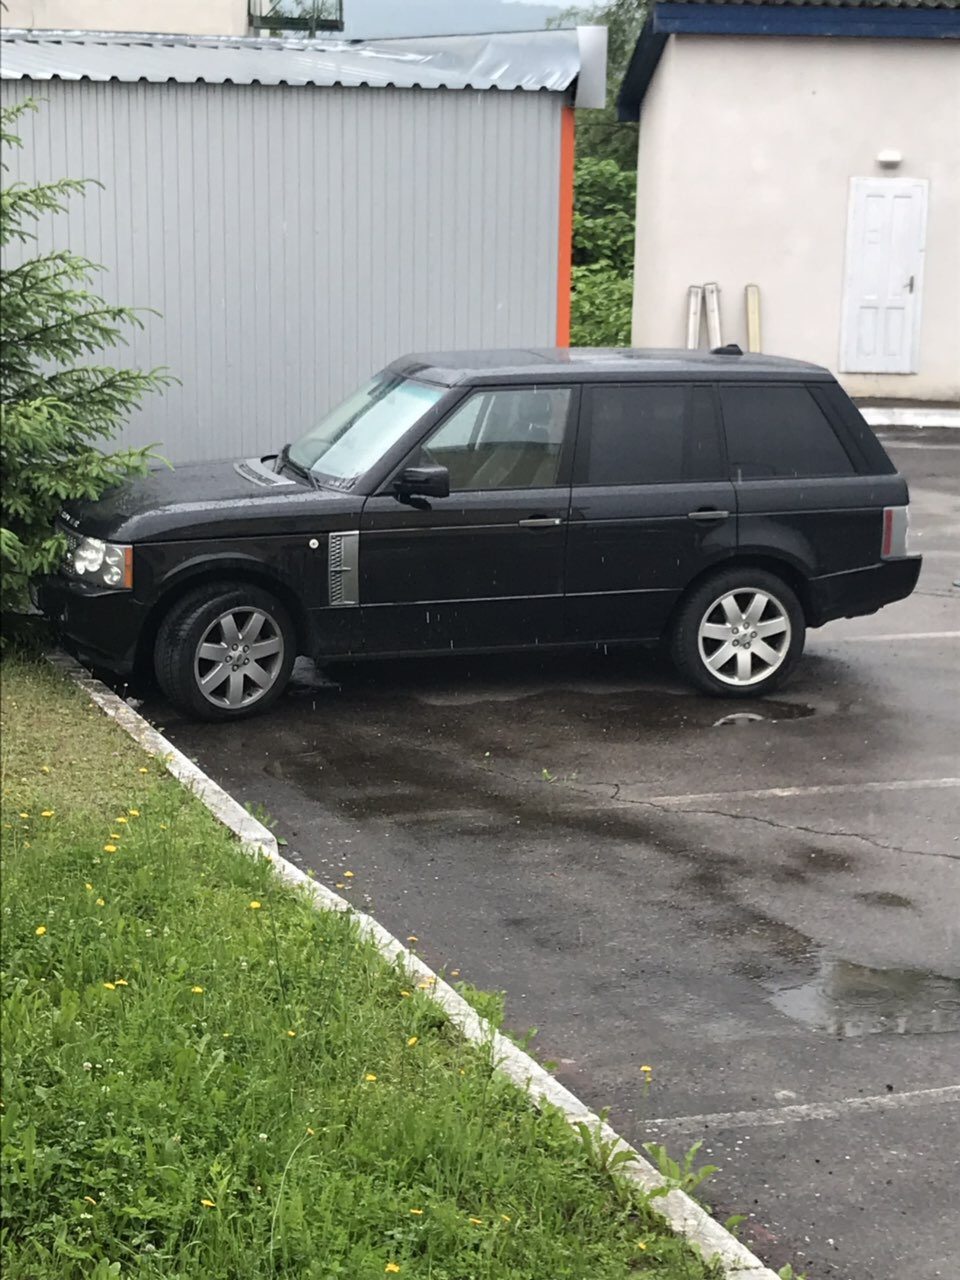 Мешканець Румунії залишив на митниці на Закарпатті Land Rover вартістю 6800 євро (ФОТО)